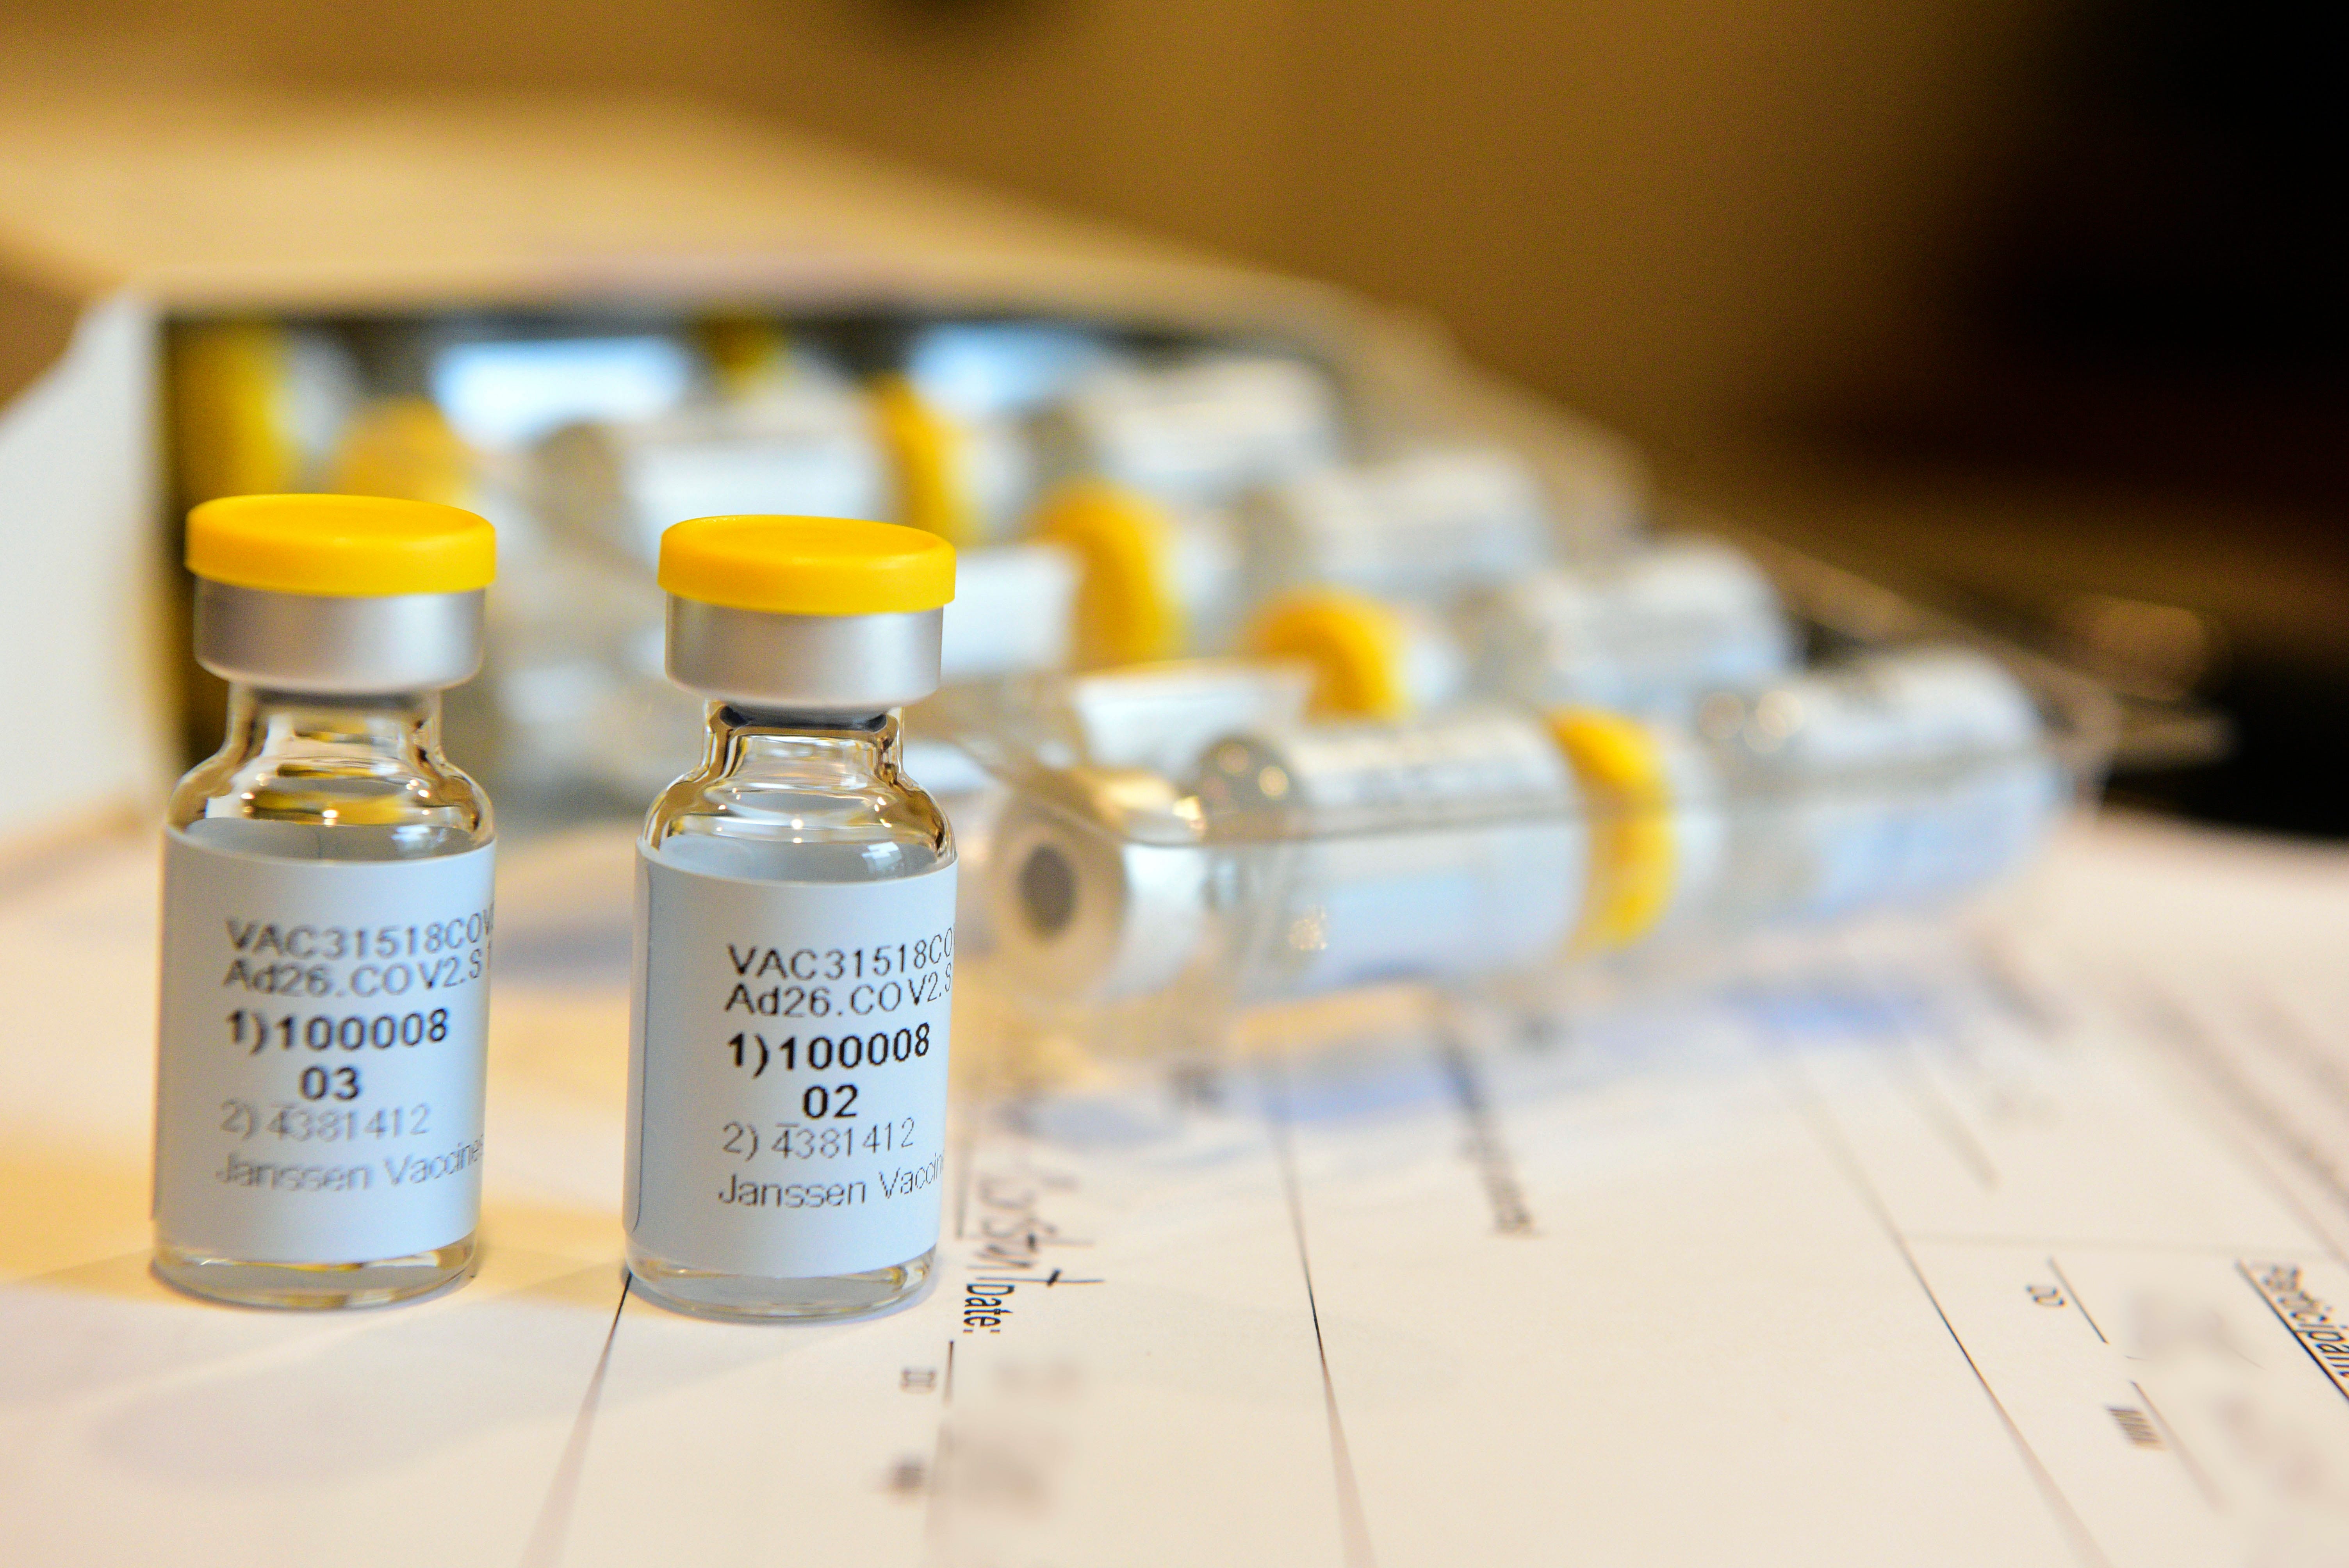 walmart vaccine covid illinois